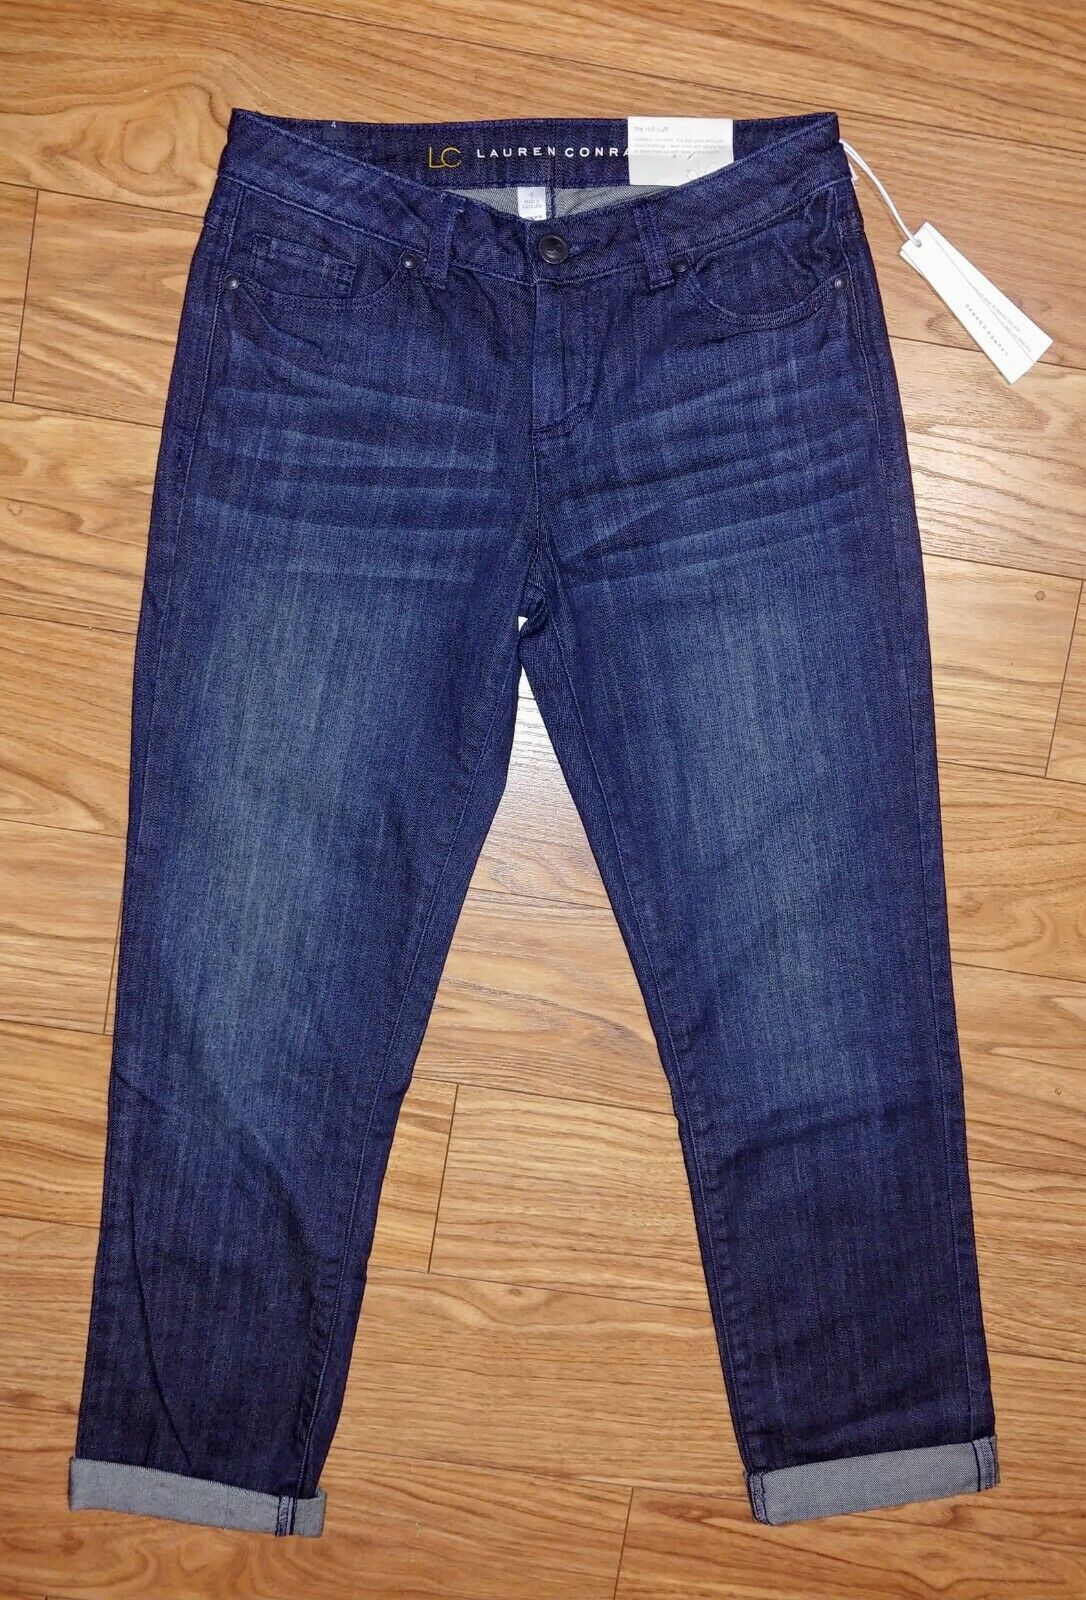 Lauren Conrad Size 4P Blue Jeans – Best Friends Consignment